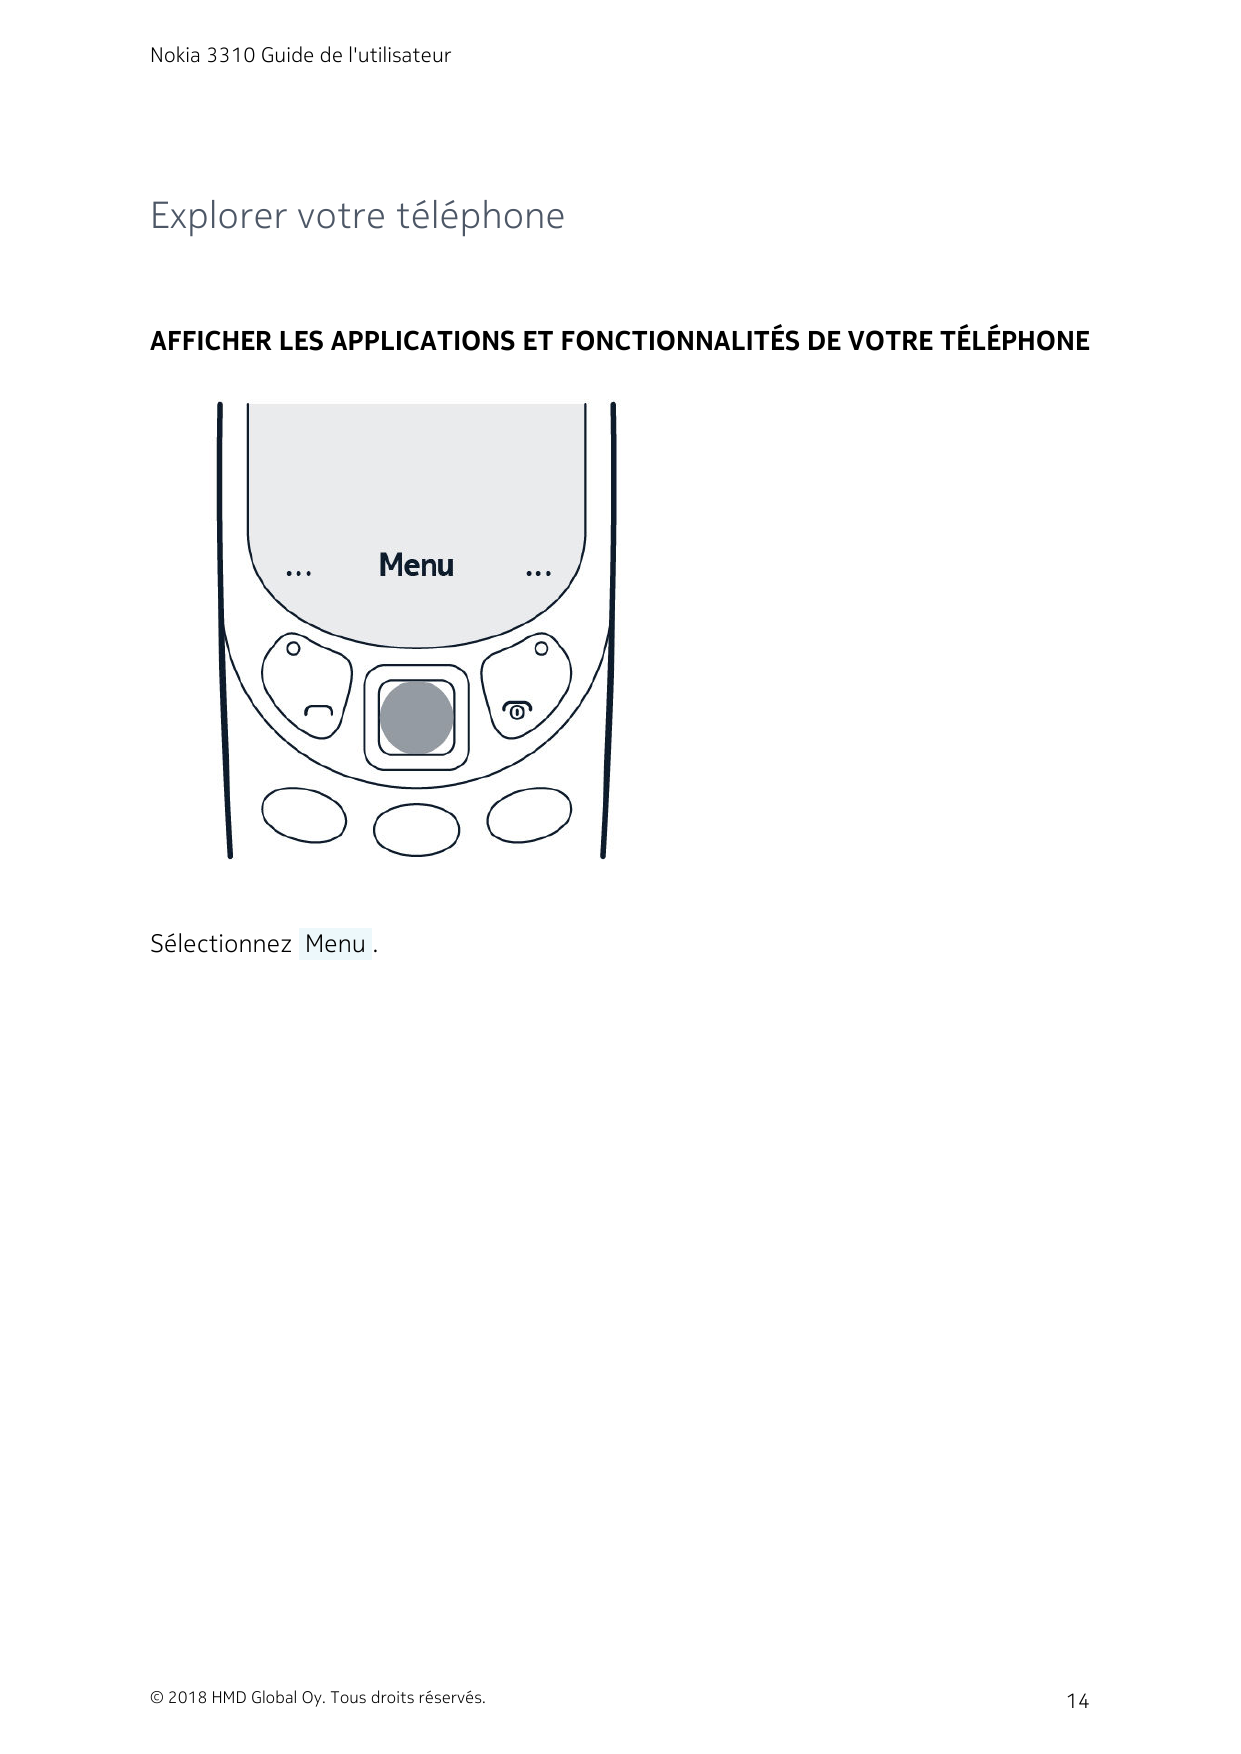 Nokia 3310 Guide de l'utilisateurExplorer votre téléphoneAFFICHER LES APPLICATIONS ET FONCTIONNALITÉS DE VOTRE TÉLÉPHONESélectio